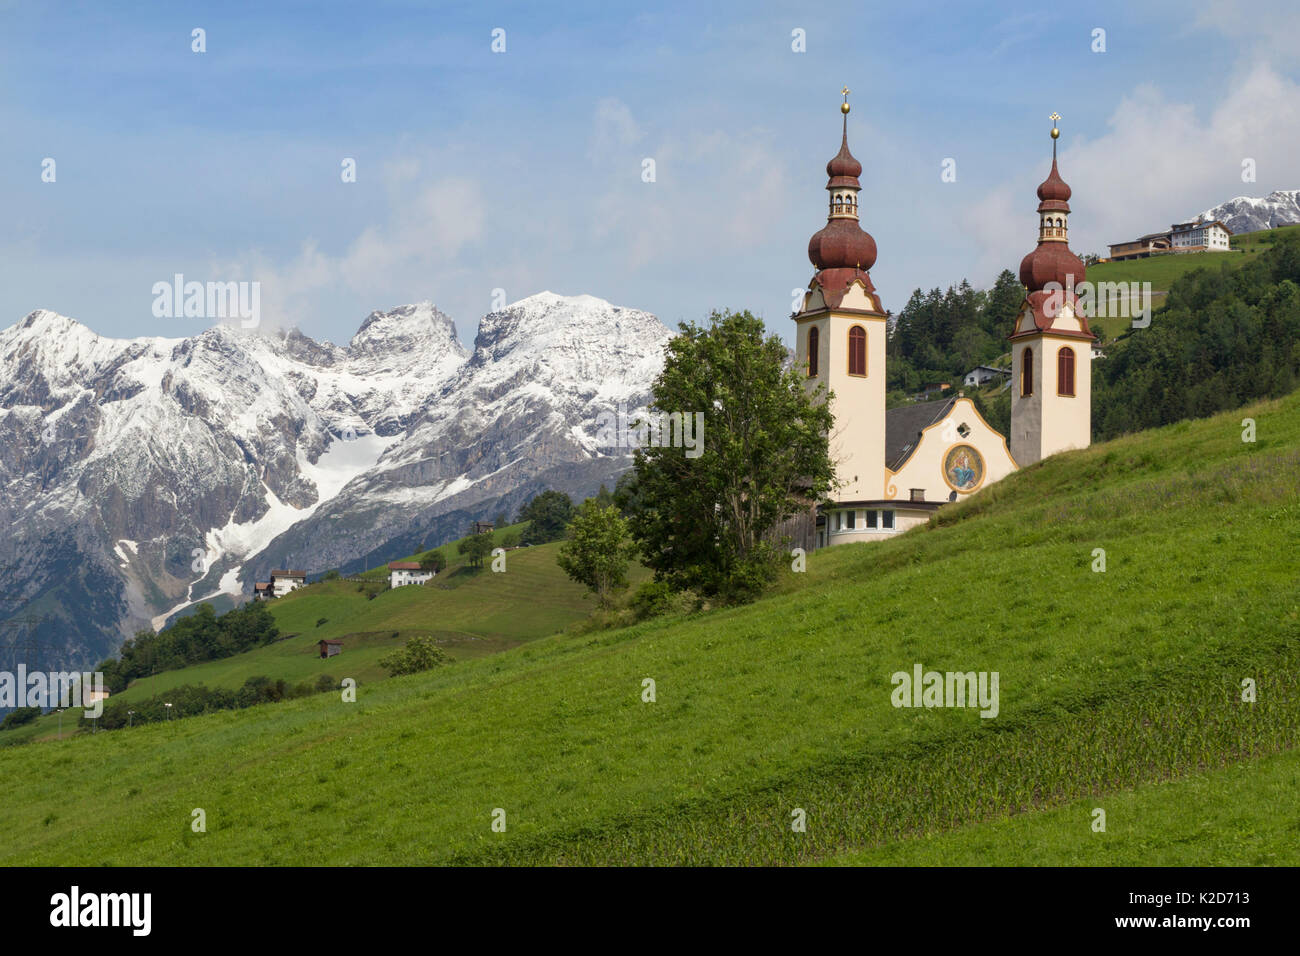 La chiesa nel villaggio di Fliess. Nordtirol, Alpi austriache. Giugno. Foto Stock